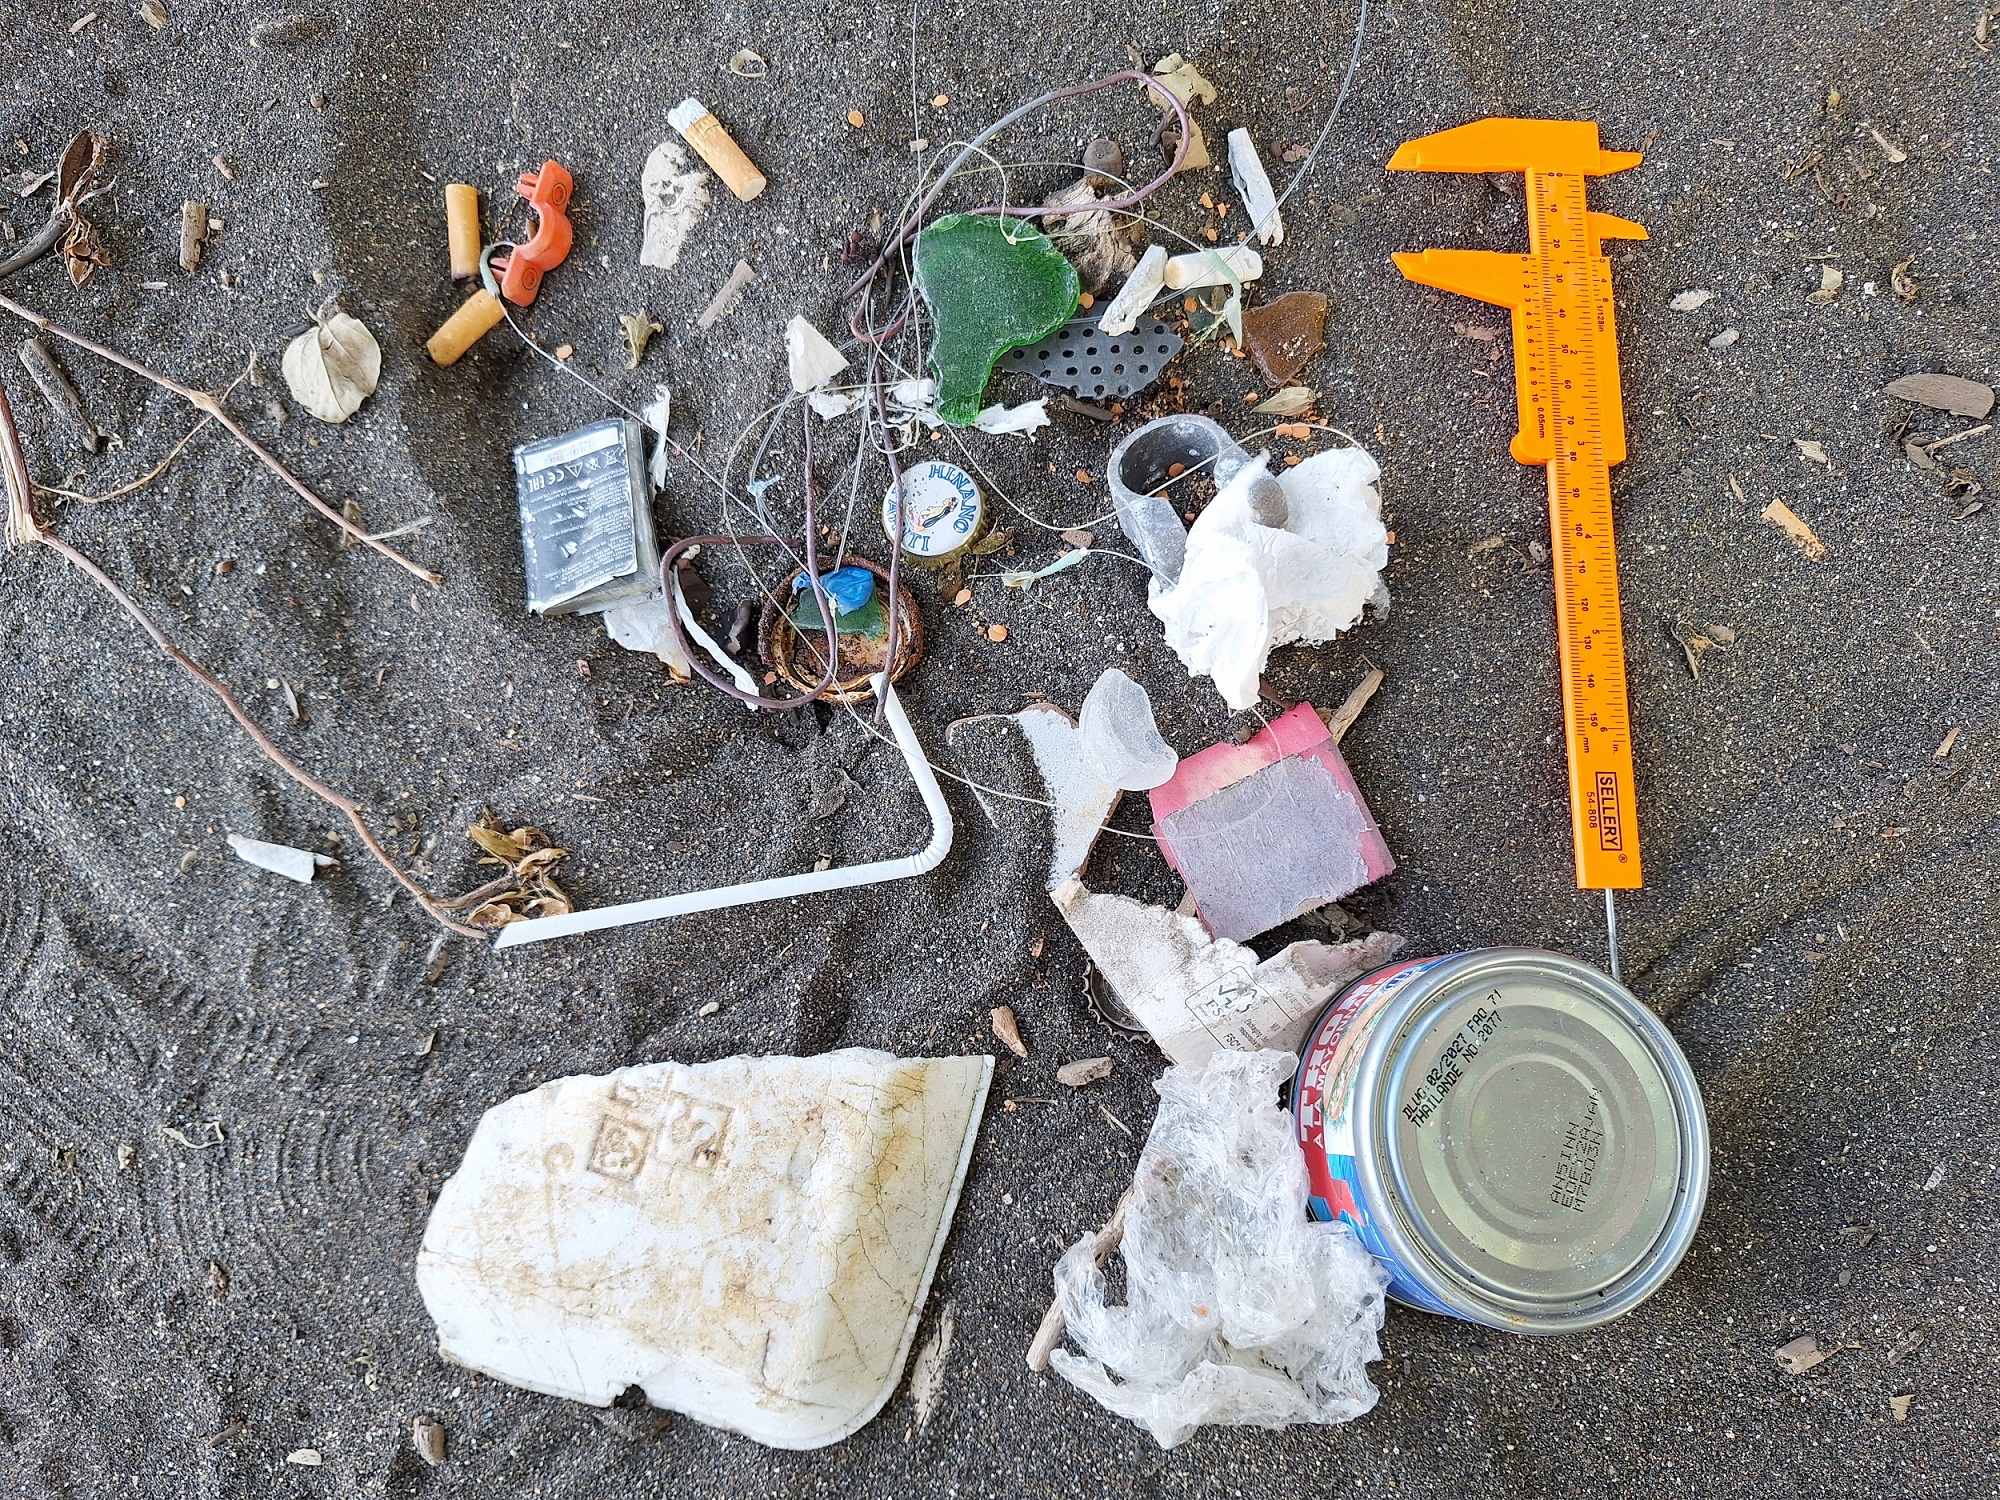 Les déchets ont été mesurés et catégorisés selon la méthode de l’Agence américaine d’observation océanique et atmosphérique (NOAA).